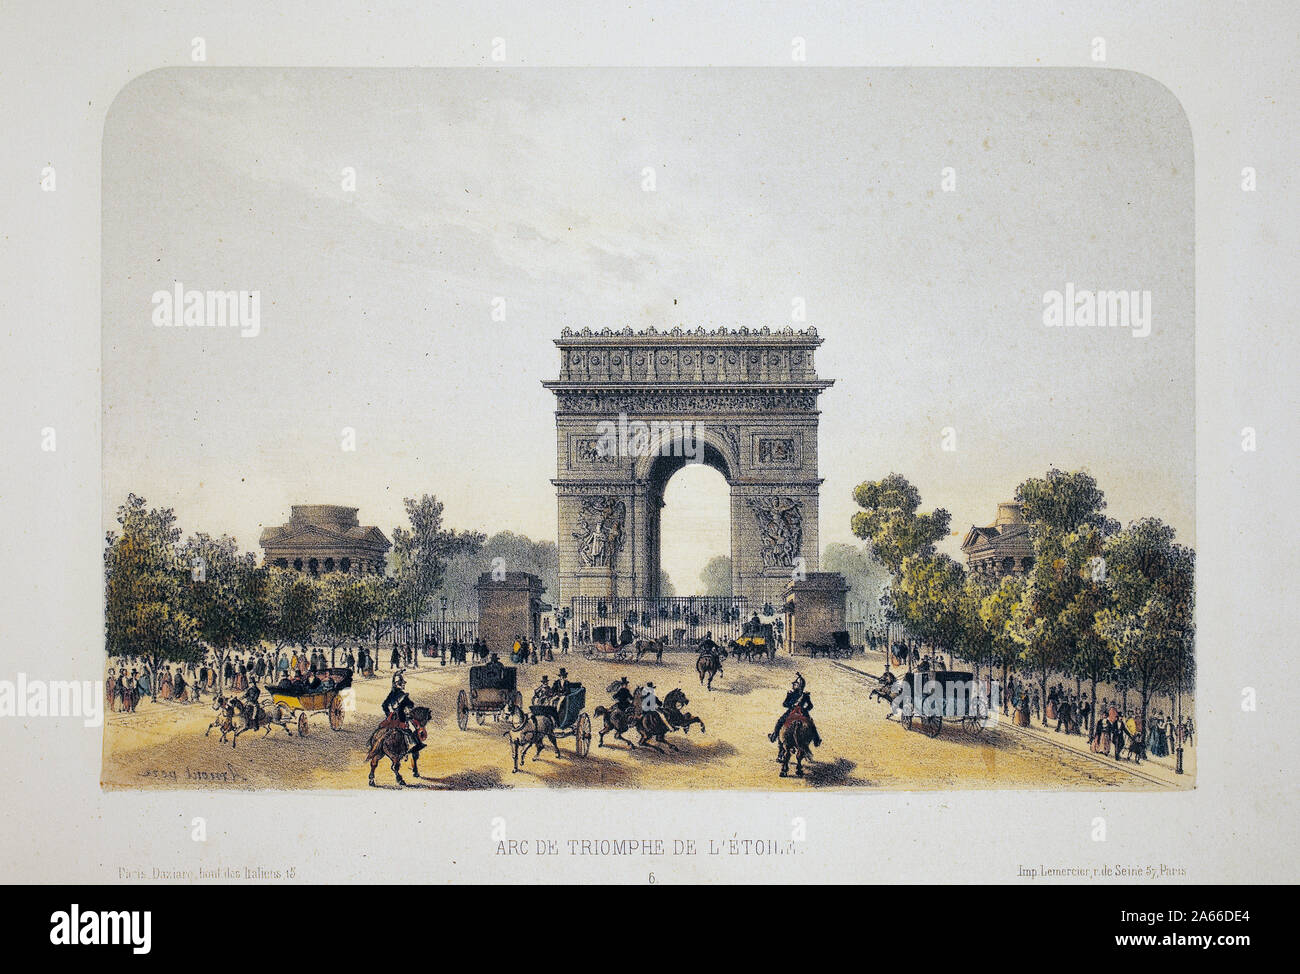 Arc de triomphe de l'Etoile, Paris. Lithographie aquarellee, illustration de Arnout, in 'Album, souvenirs de Paris', Daziaro editeur, Paris, 1885. Stock Photo